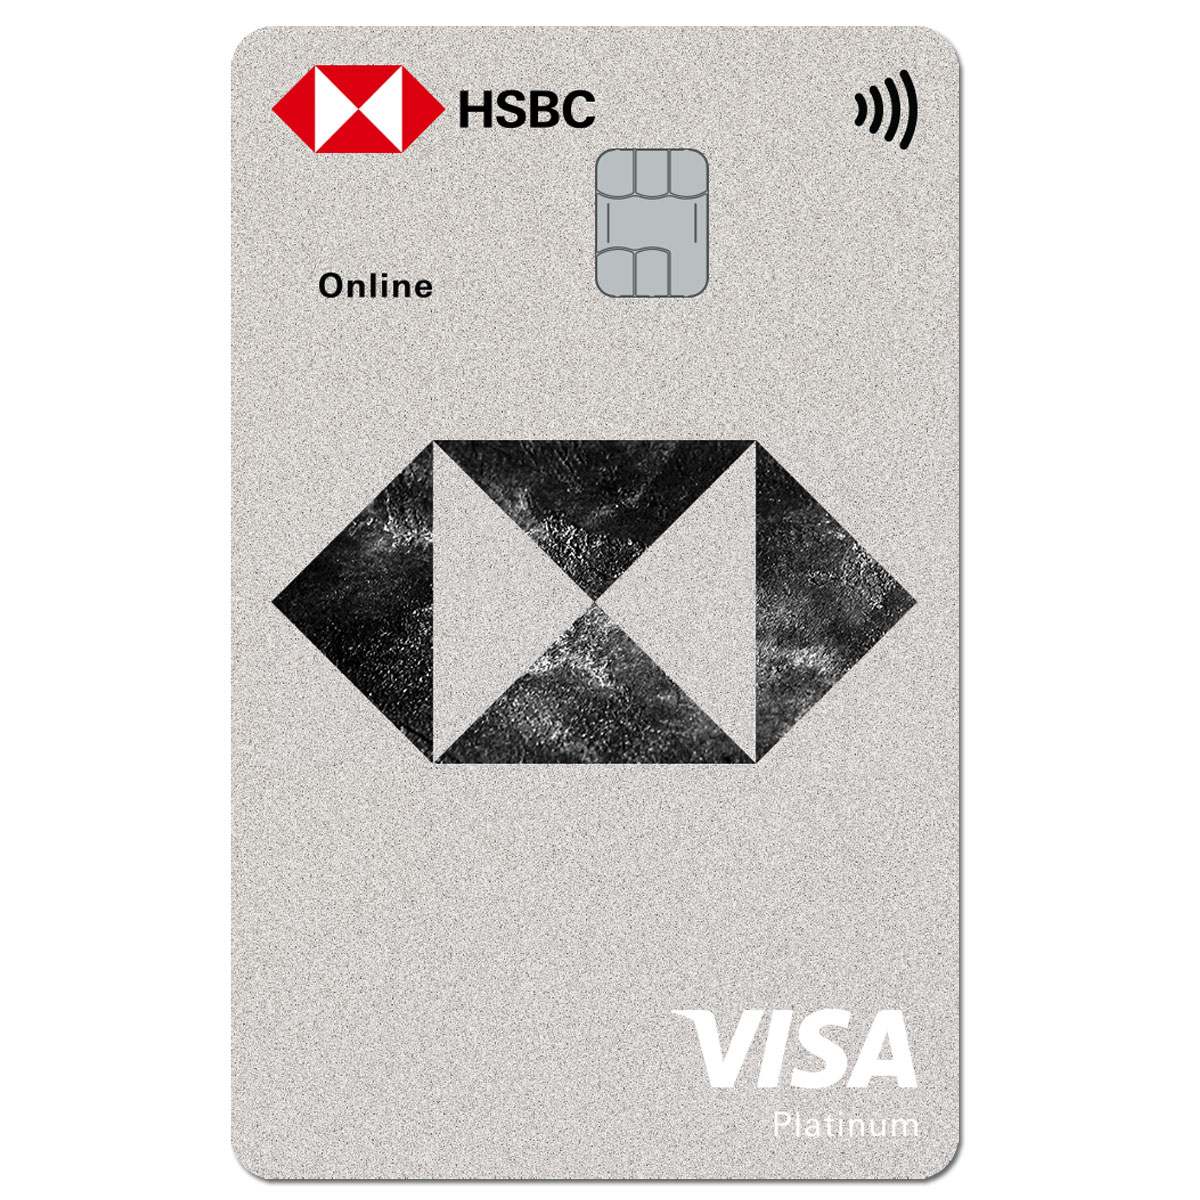 Hãy khám phá bức ảnh đầy màu sắc của thẻ tín dụng HSBC và cảm nhận sự tiện lợi, an toàn khi sử dụng một trong những dịch vụ tài chính hàng đầu thế giới.